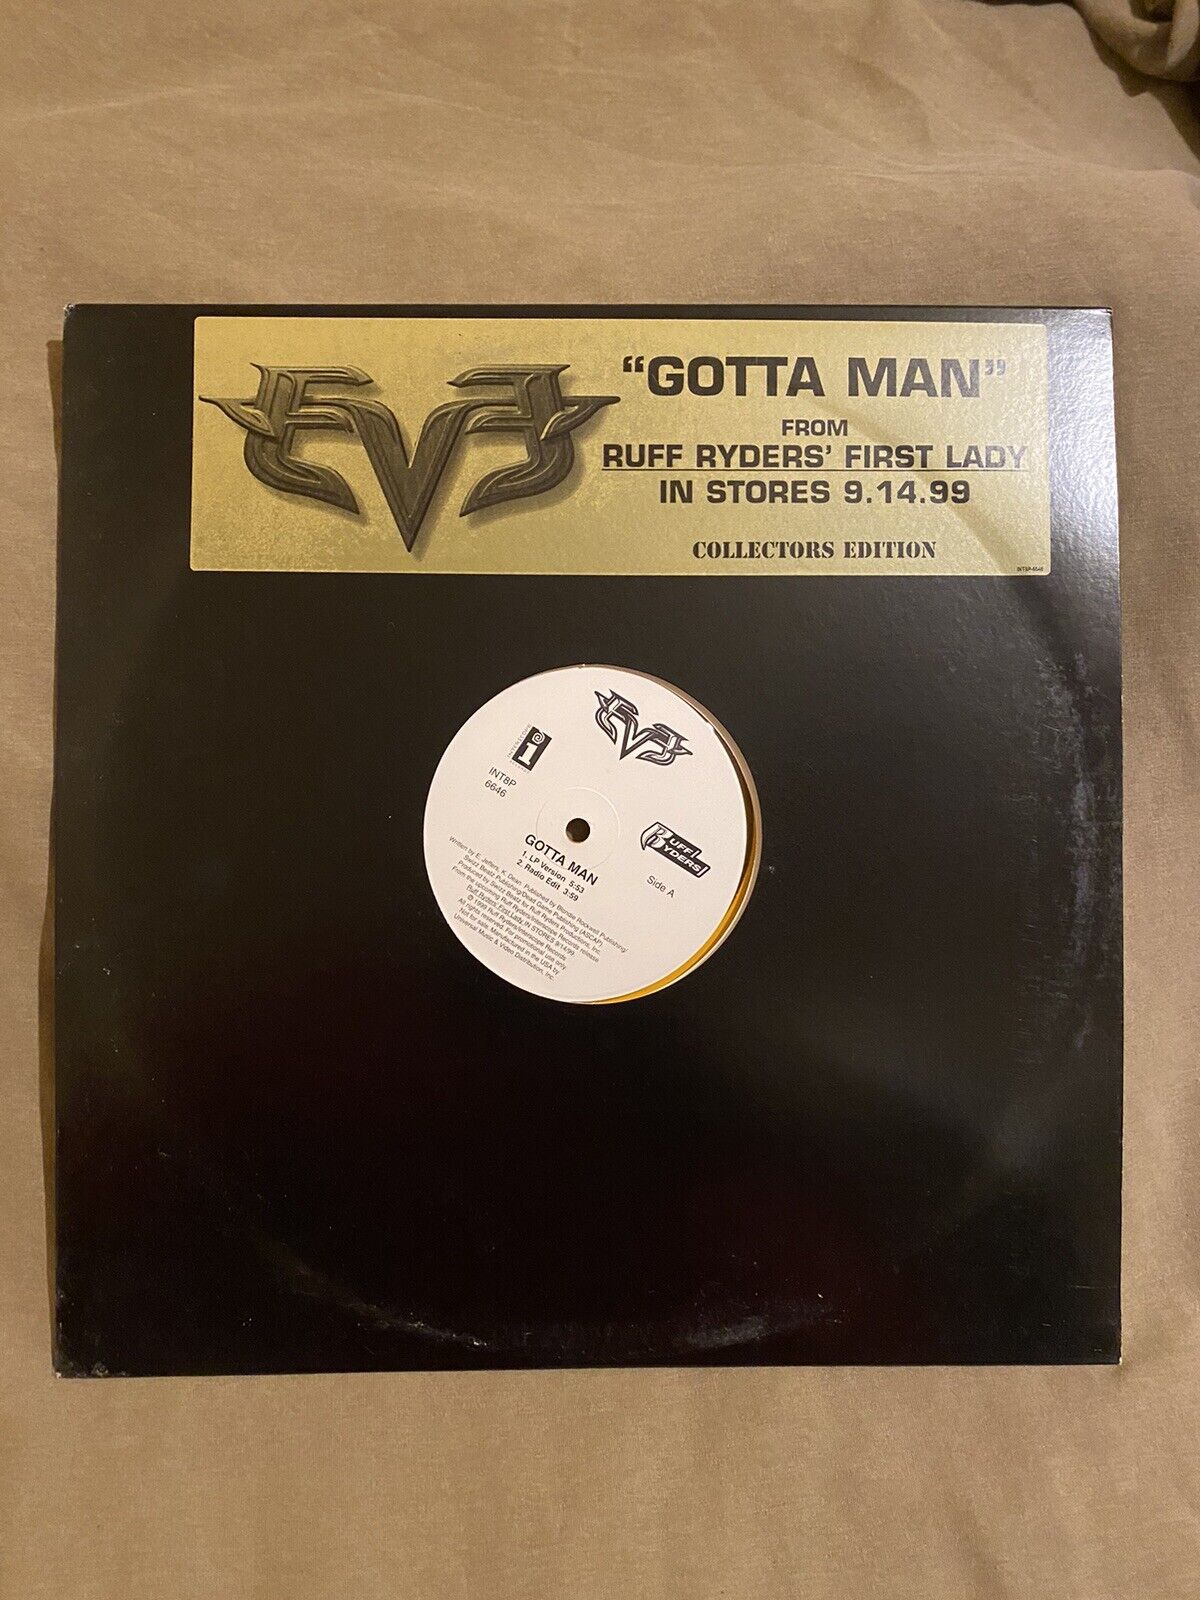 Eve - Gotta Man -(Collectors) 12” Yellow Vinyl Record NEW Orig. Pressing